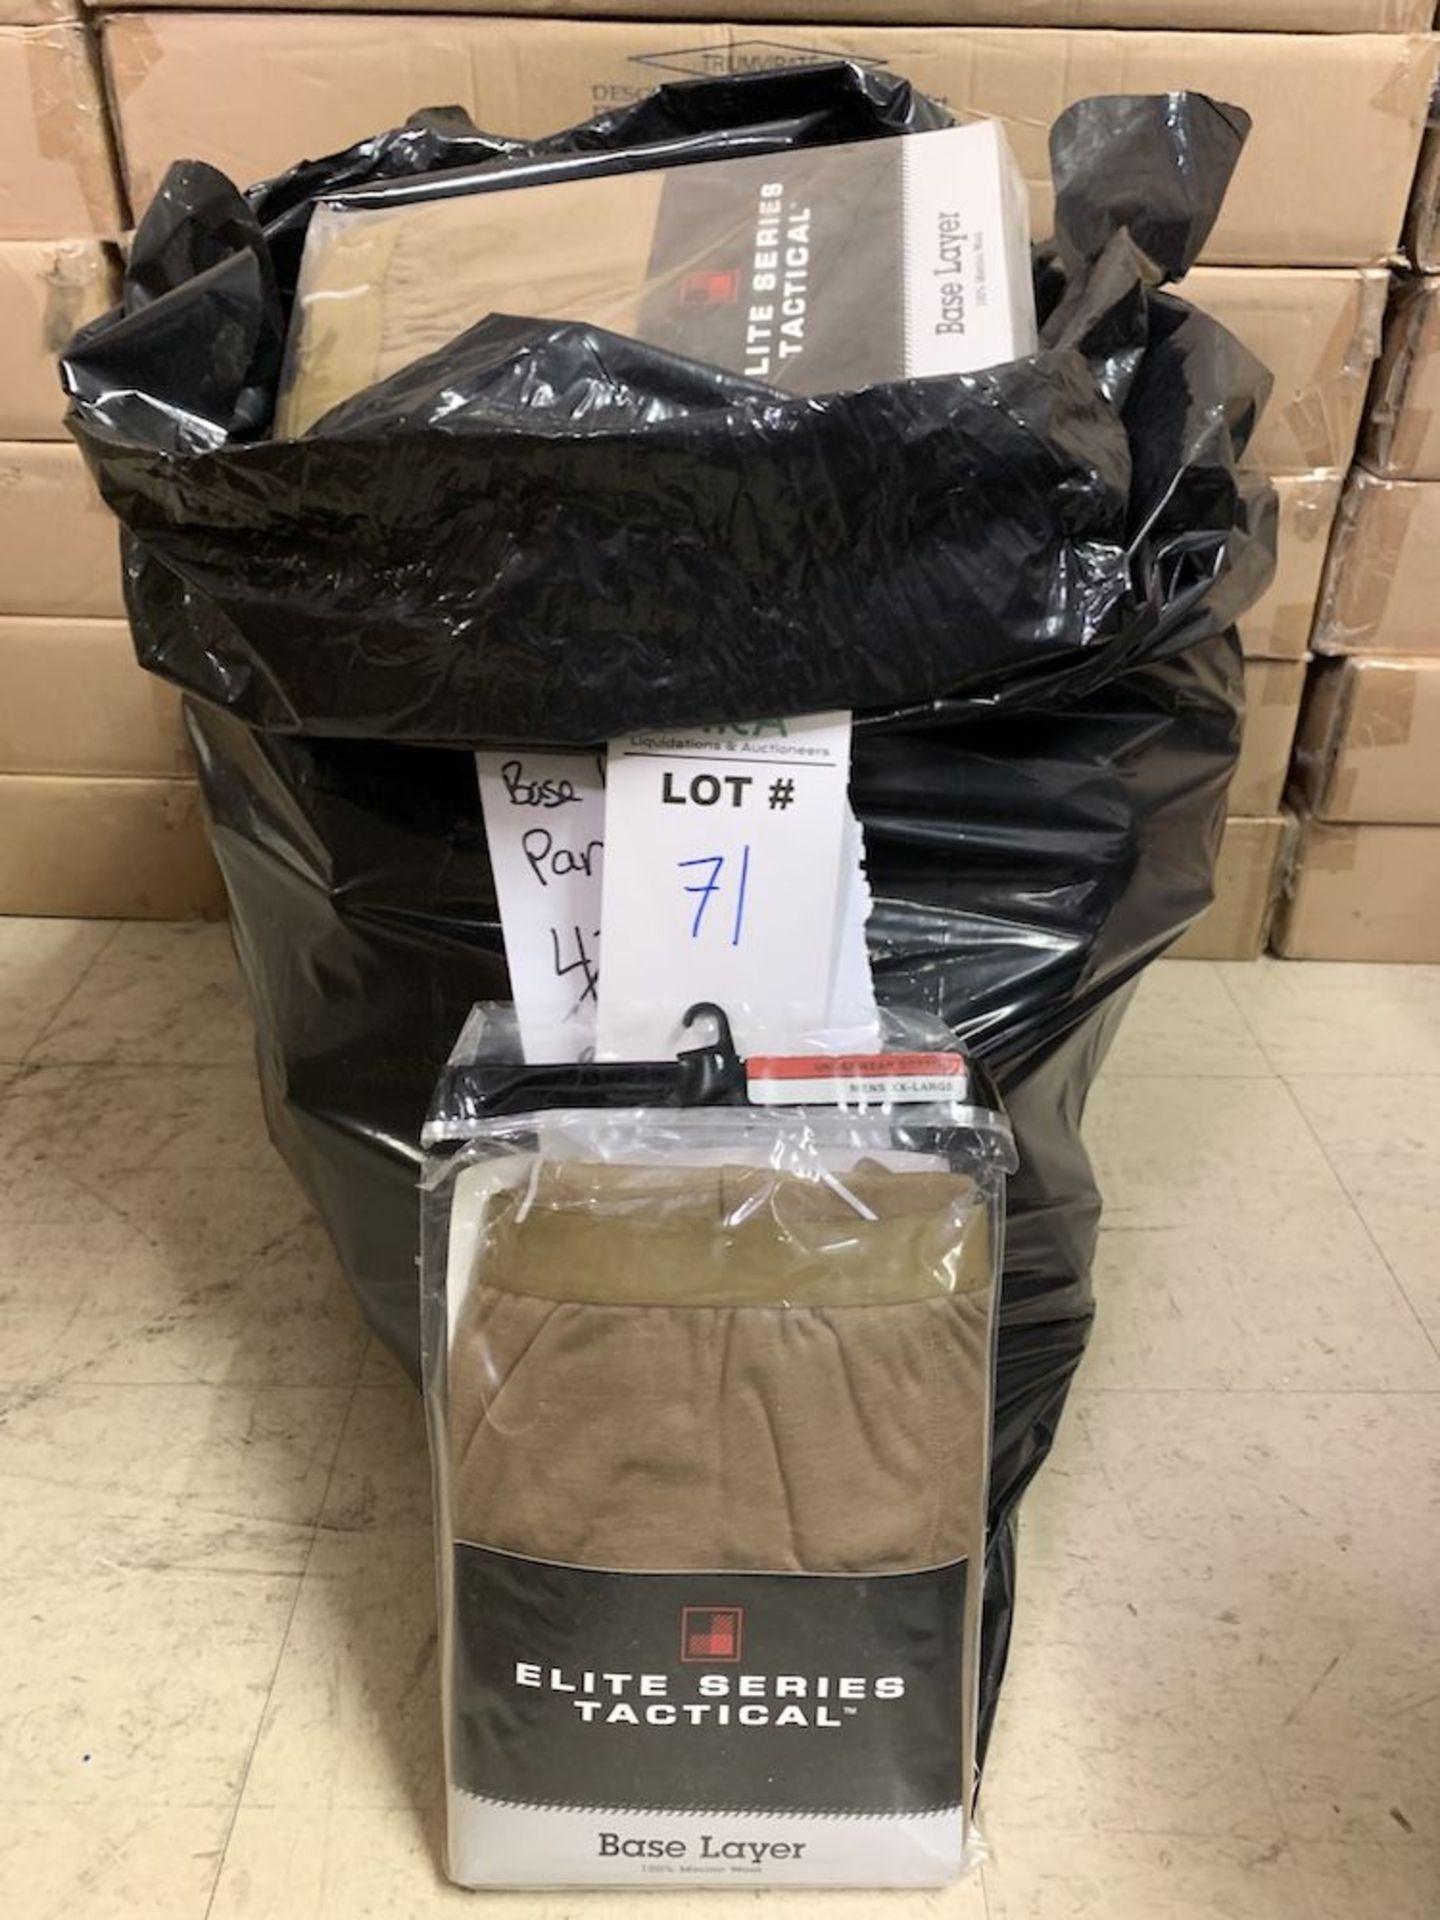 42 Pairs of Elite Series Tactical Base Layer Pants, New in Packaging, Brown, Merino Wool, Retail